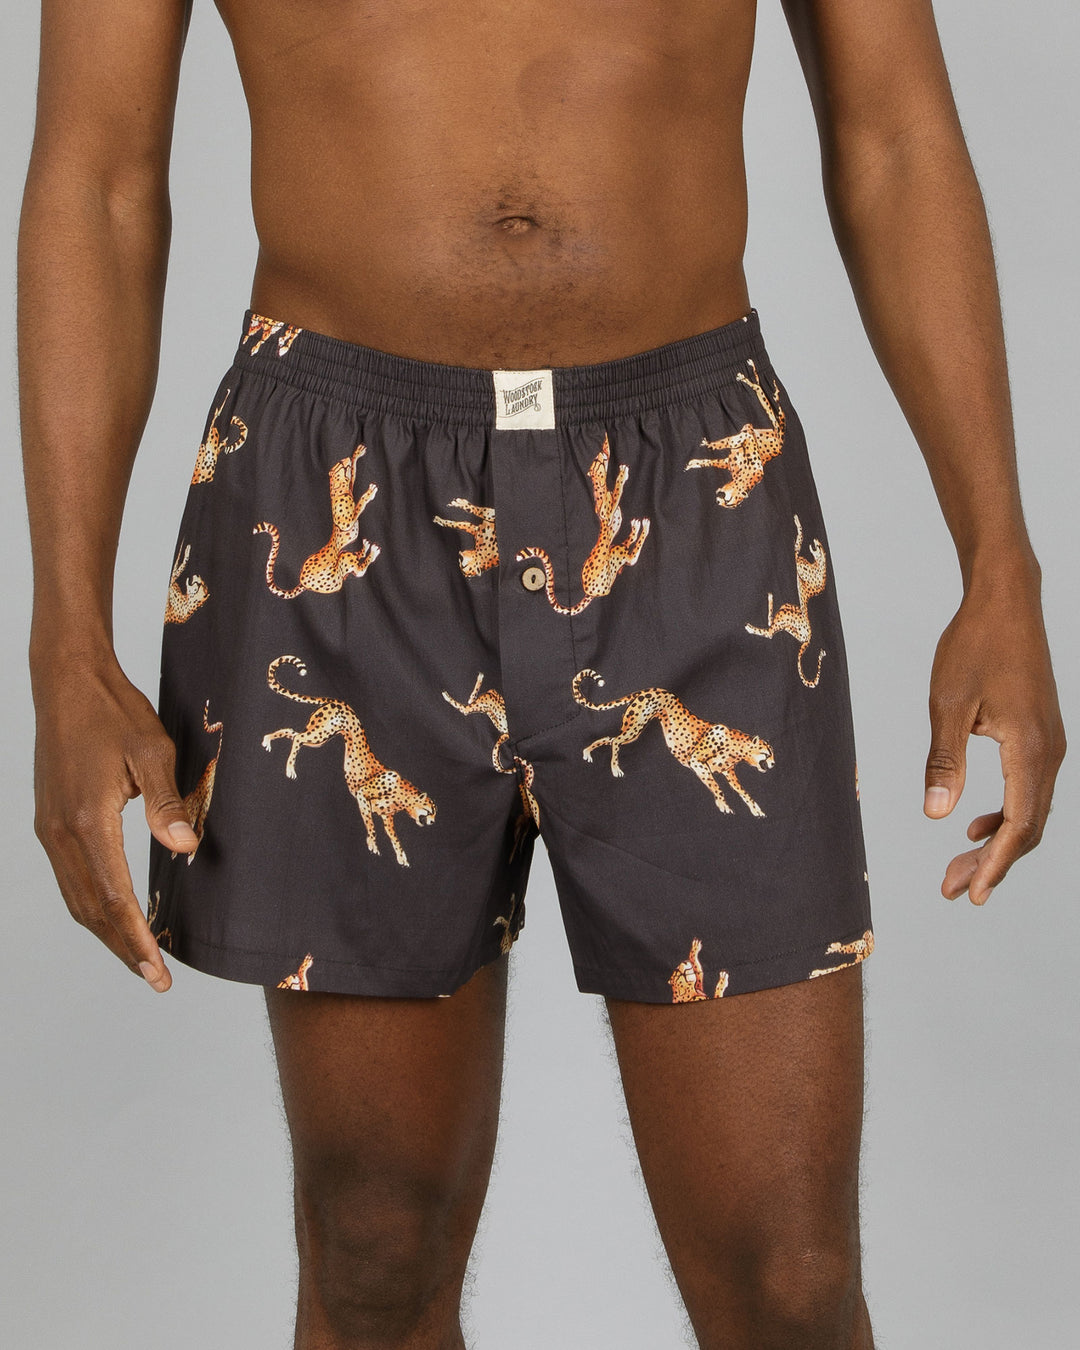 Mens Boxer Shorts Jumping Cheetahs Front - Woodstock Laundry